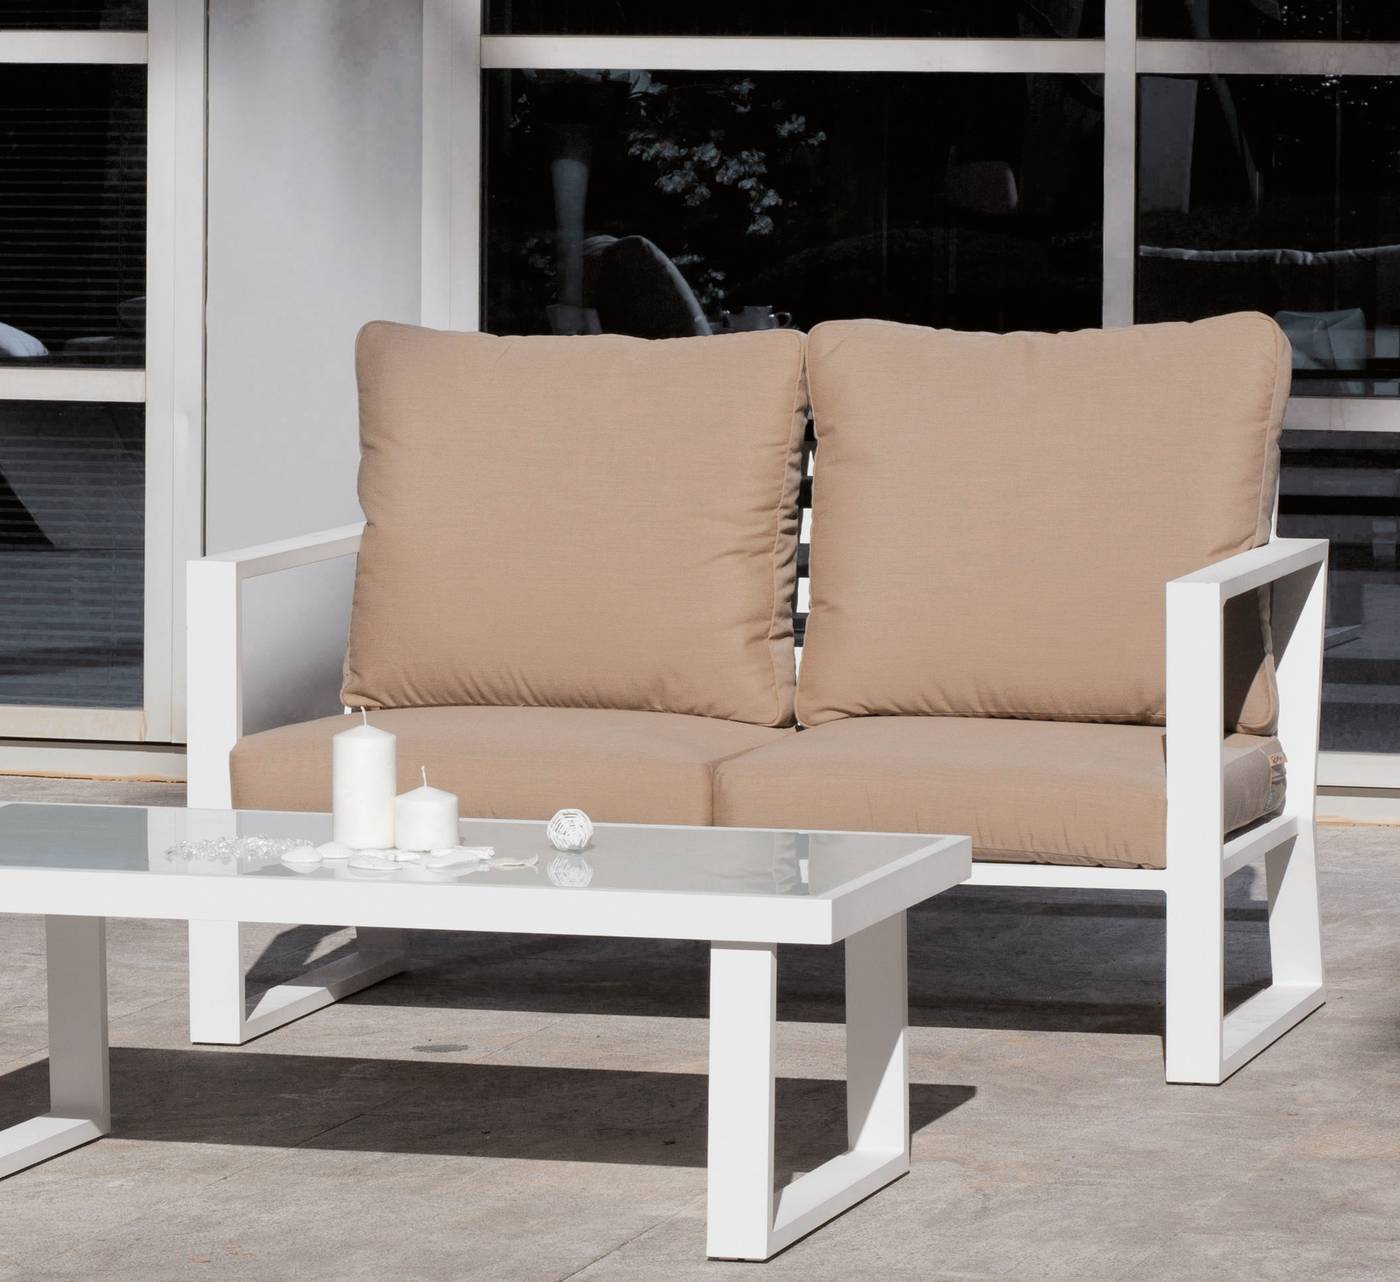 Set Aluminio Bolonia-7 - 1 sofá de 2 plazas + 2 sillones + 1 mesa de centro + cojines.